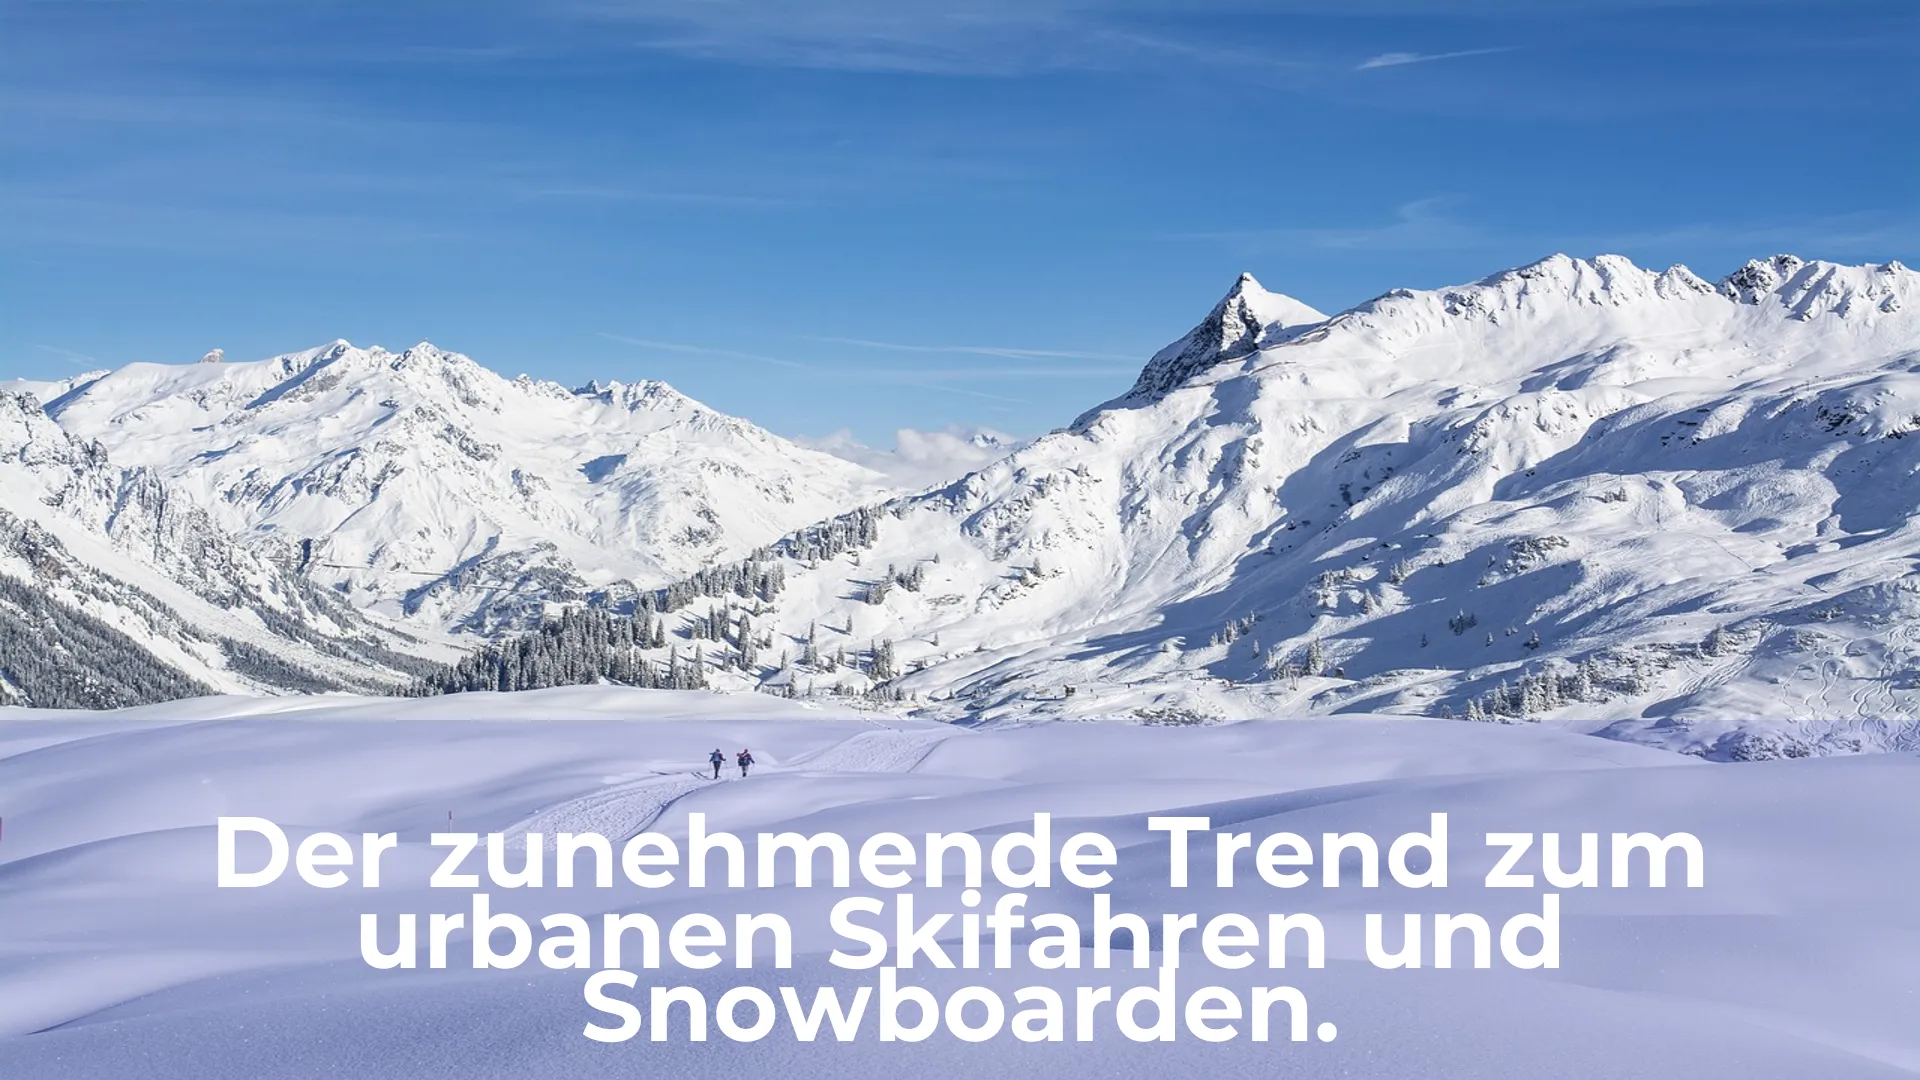 Der zunehmende trend zum urbanen skifahren und snowboarden